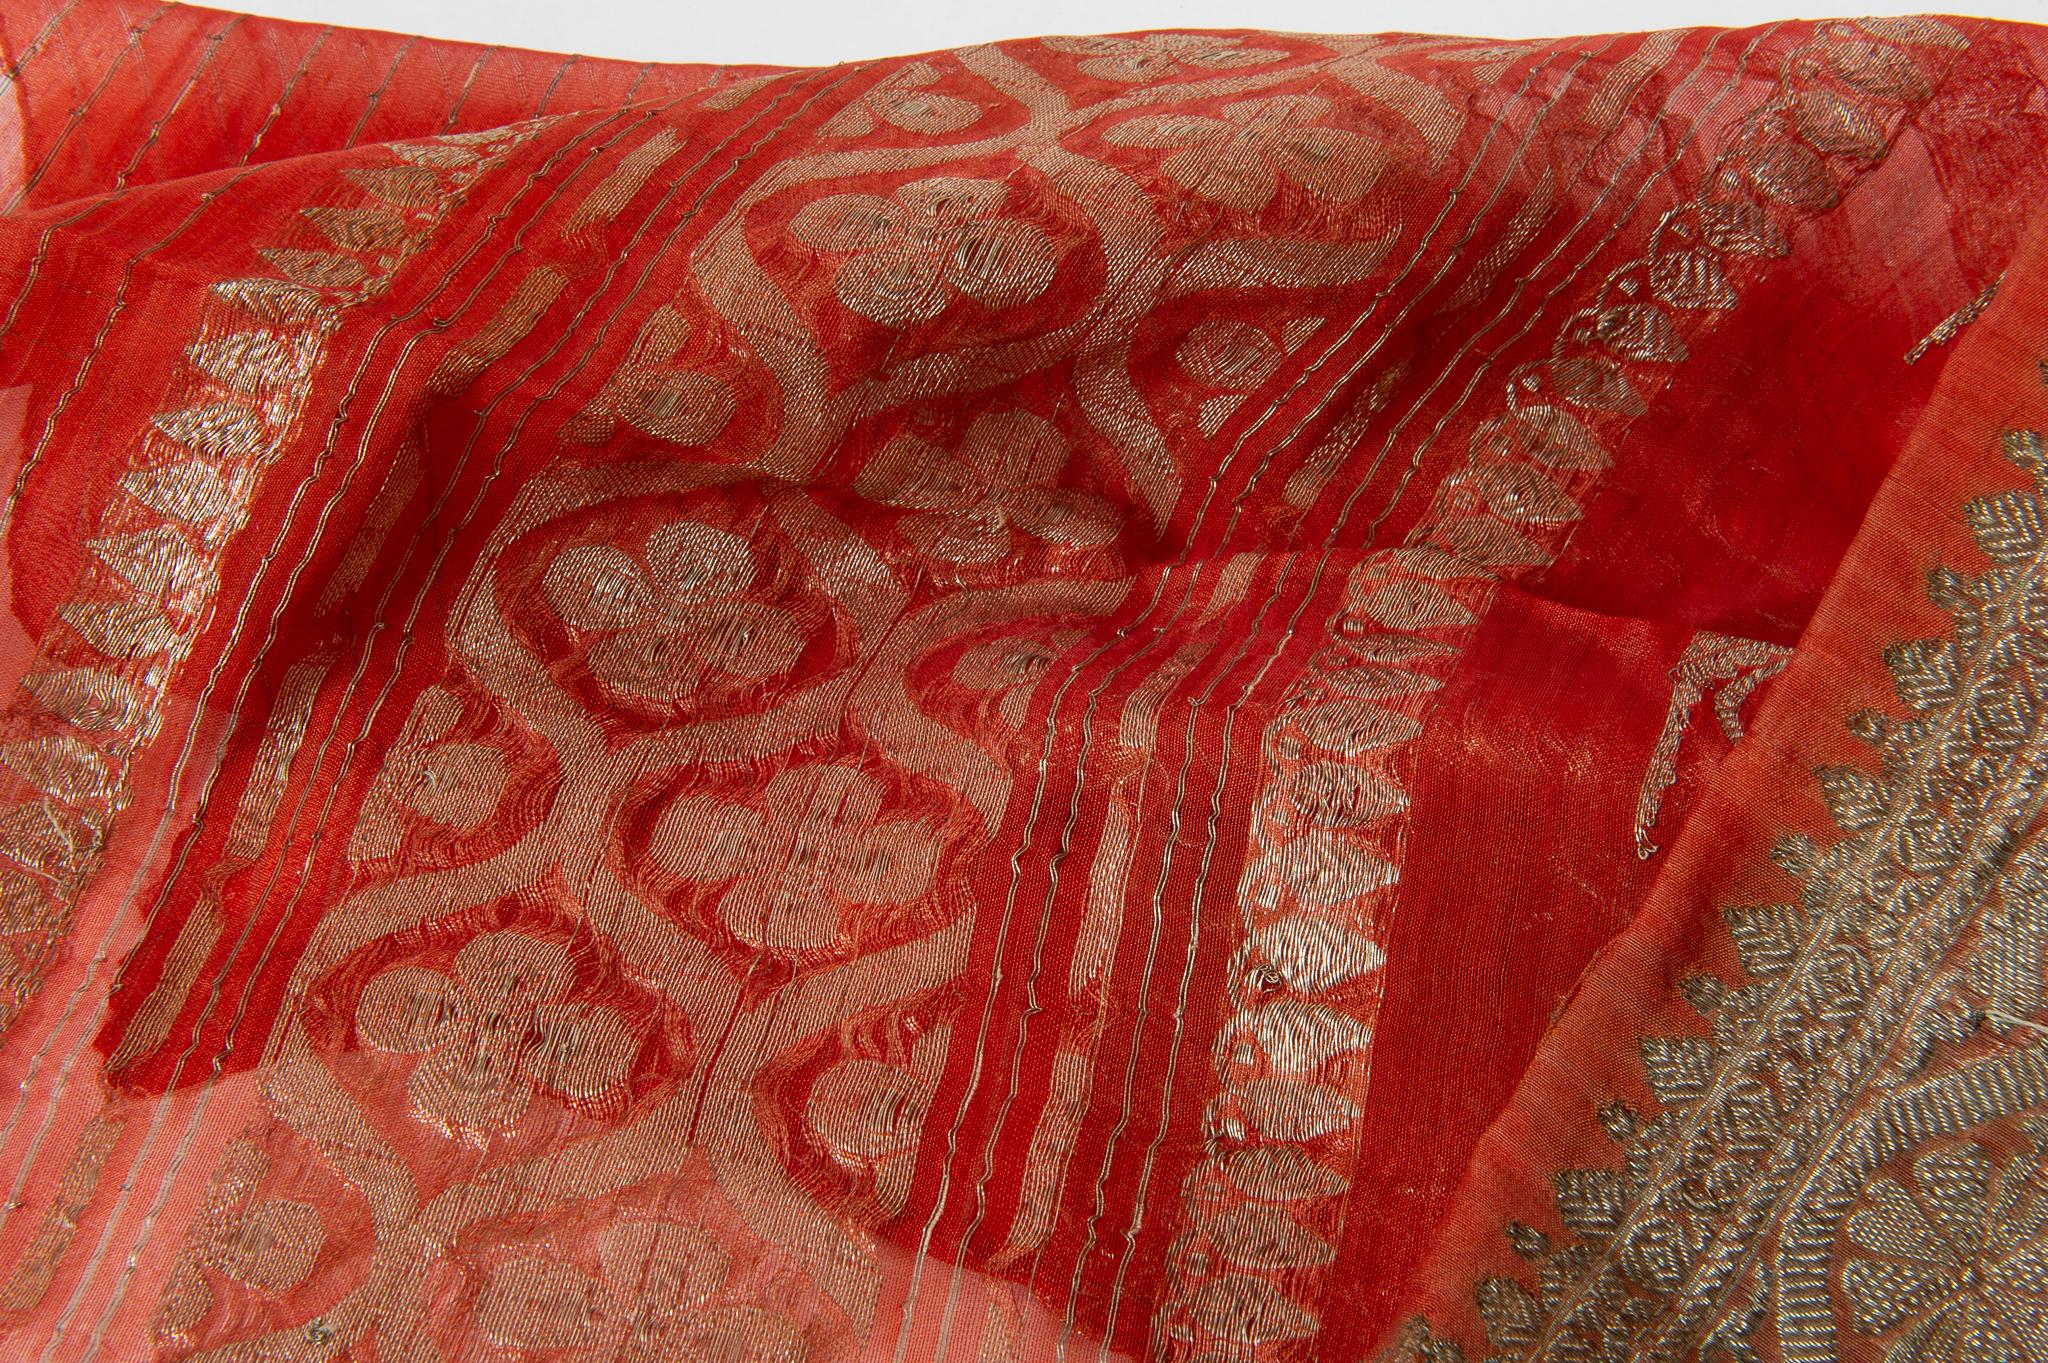 Sari indien vintage dans une belle couleur corail, avec des motifs floraux et une riche bordure. Il a été porté, ce qui explique la présence de quelques taches, même si elles ont été lavées.
Certains saris sont en soie, d'autres en mélange